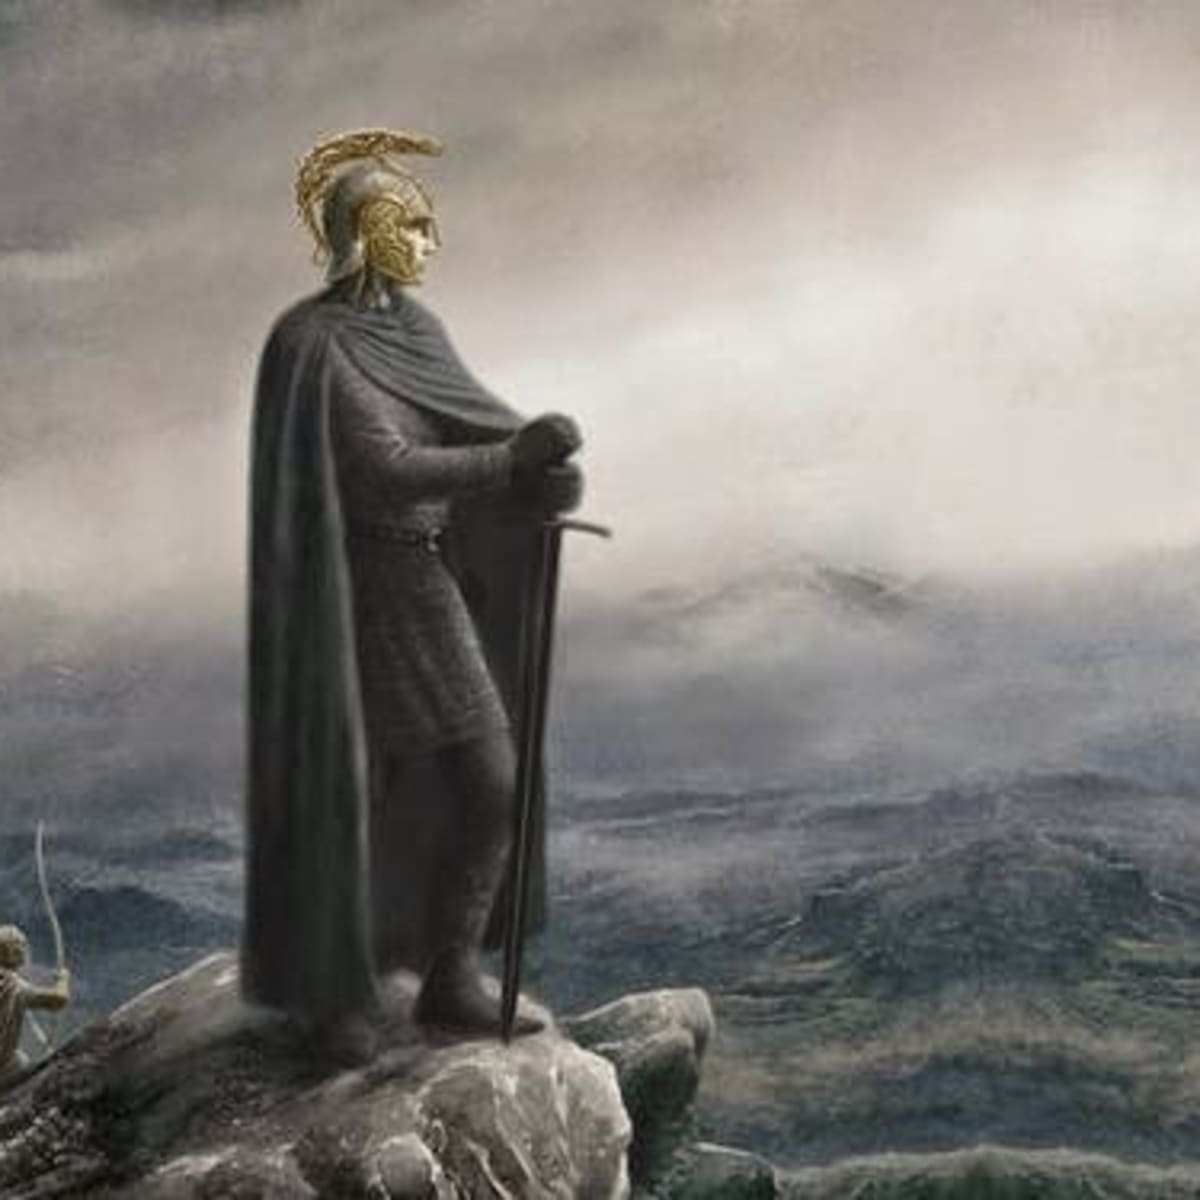 Túrin, Part 3  Silmarillion Writers' Guild